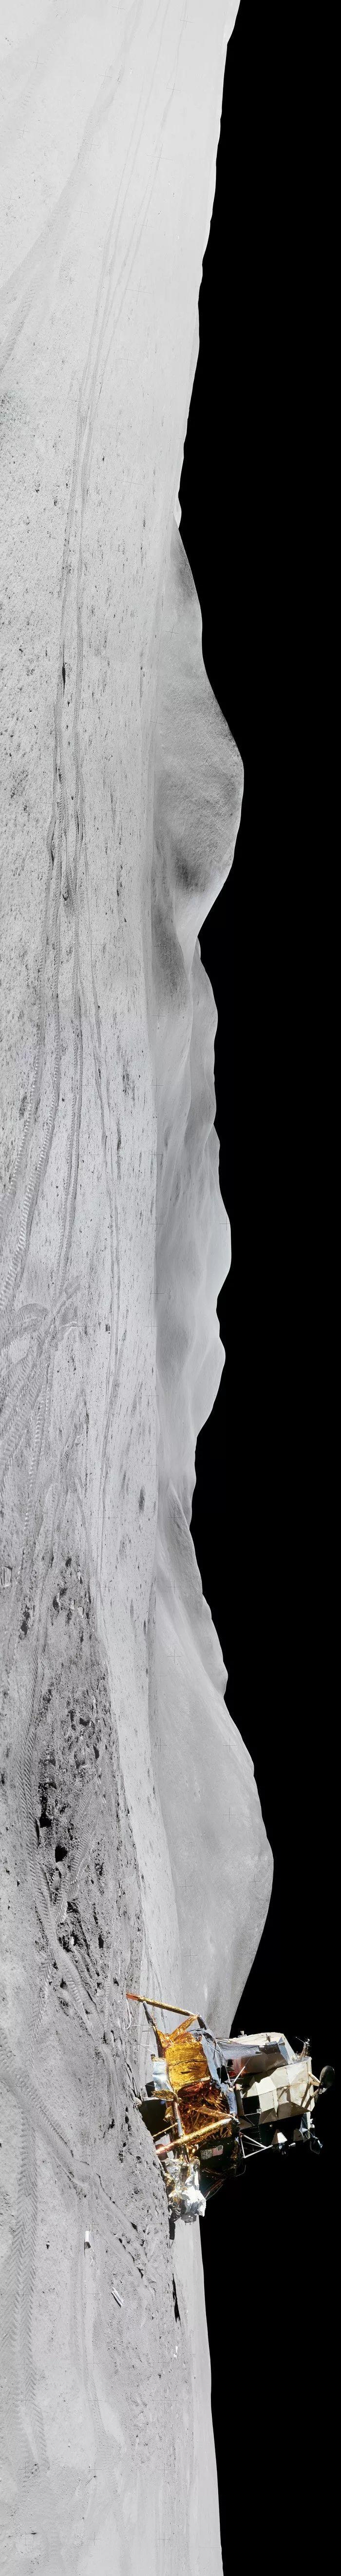 人类六次登月着陆点的全景照片